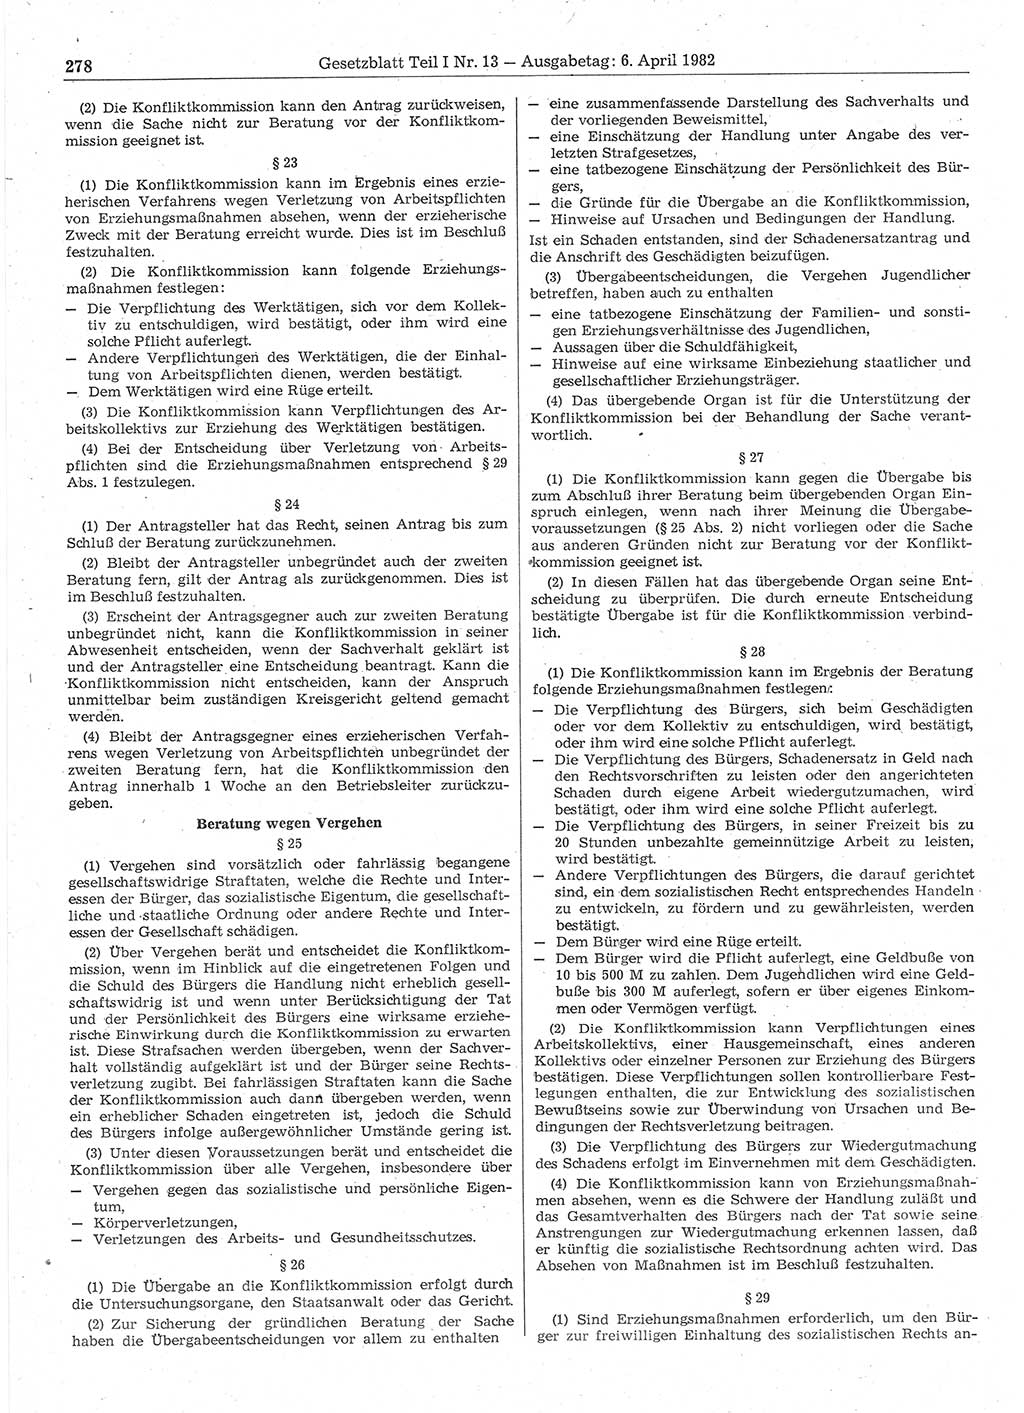 Gesetzblatt (GBl.) der Deutschen Demokratischen Republik (DDR) Teil Ⅰ 1982, Seite 278 (GBl. DDR Ⅰ 1982, S. 278)